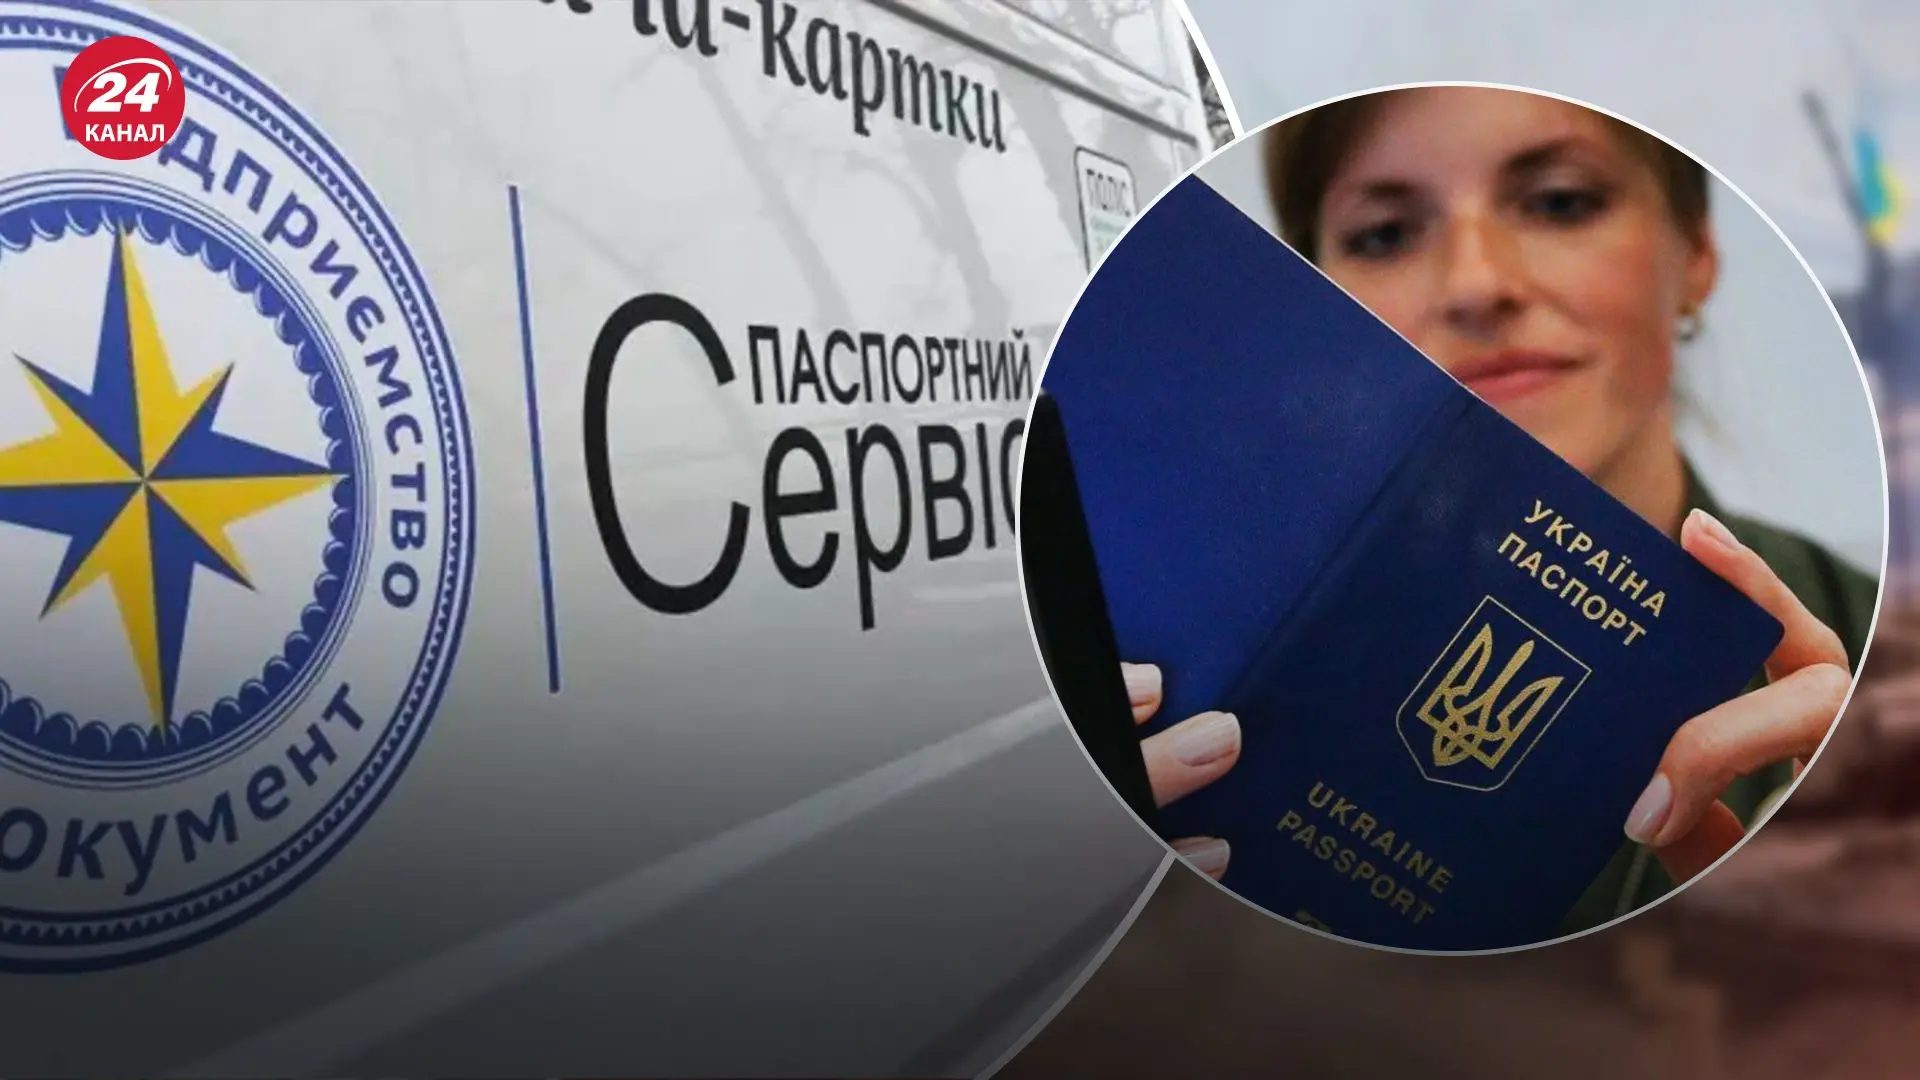 Уряд рішив продовжити роботу паспортного сервісу для українців за кордоном. Поки невідомо, що саме відомо про цю ініціативу та які саме послуги будуть надаватися українцям за кордоном.